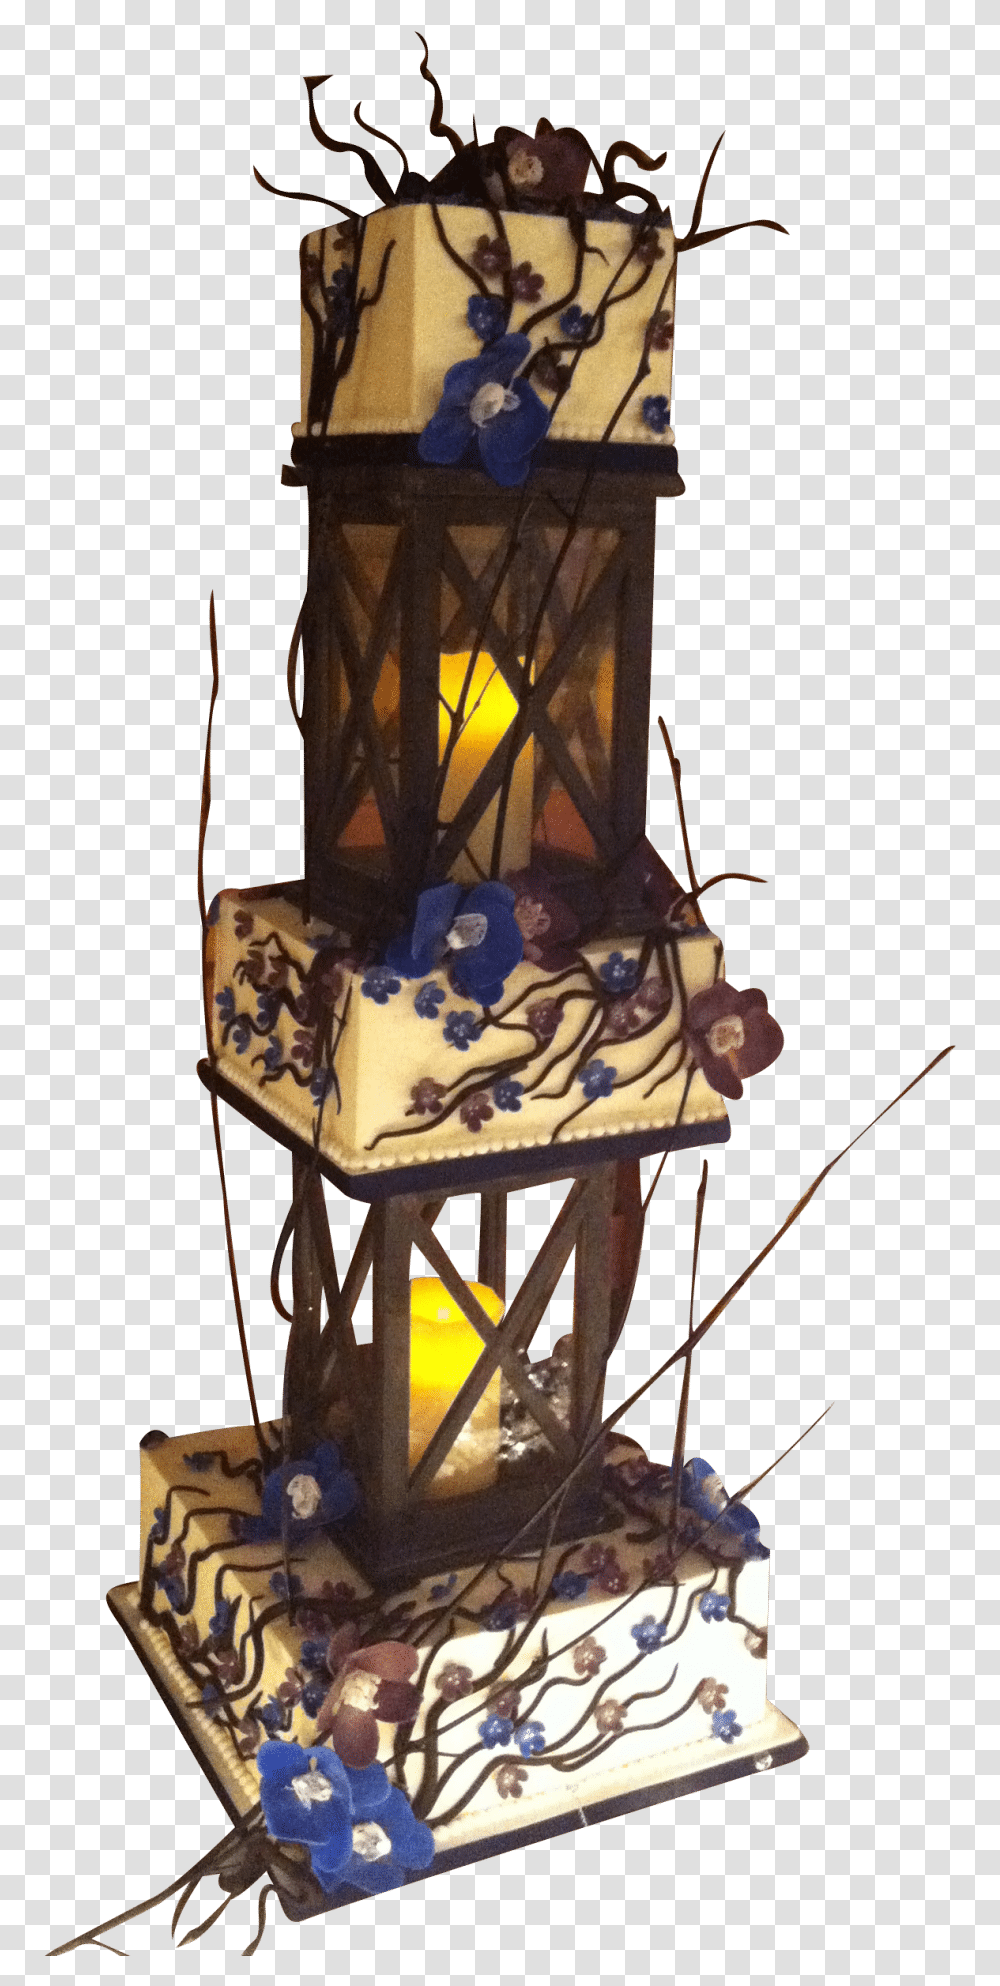 Lantern Wedding Cake Illustration, Lamp, Lampshade Transparent Png